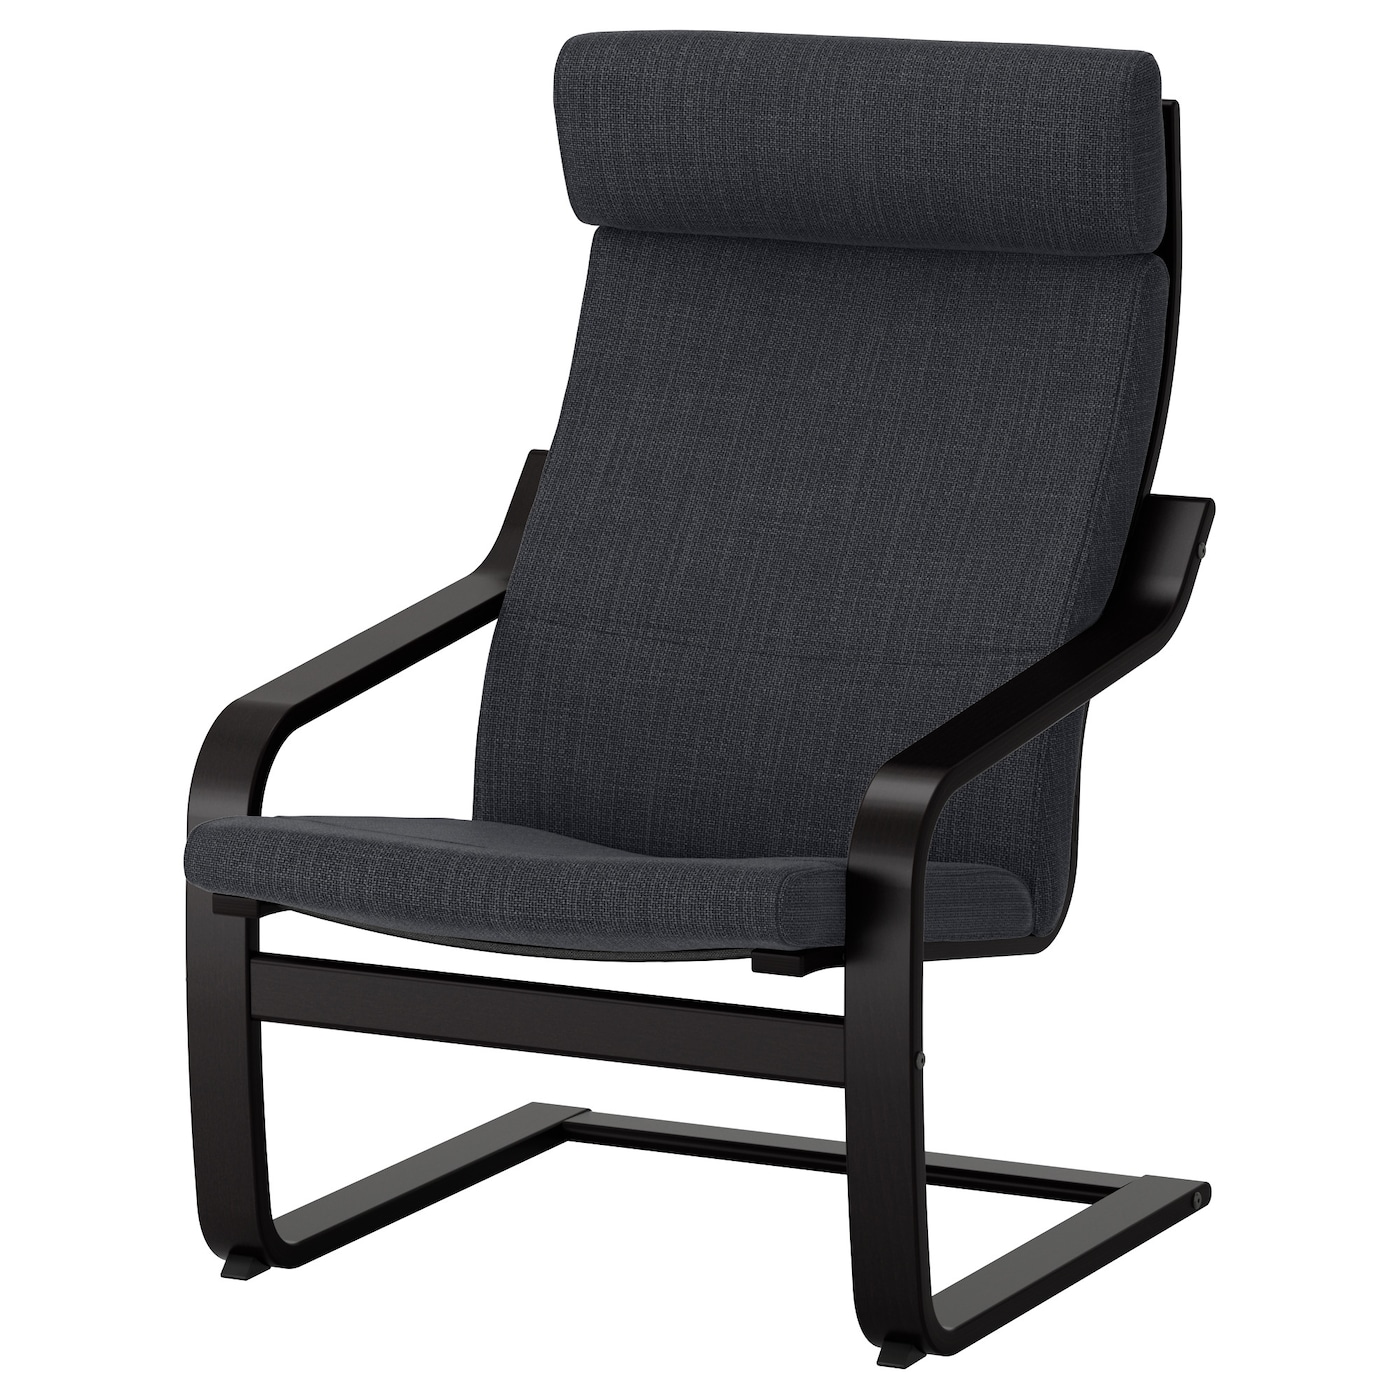 ПОЭНГ Кресло, черно-коричневый/Хилларед антрацит POÄNG IKEA